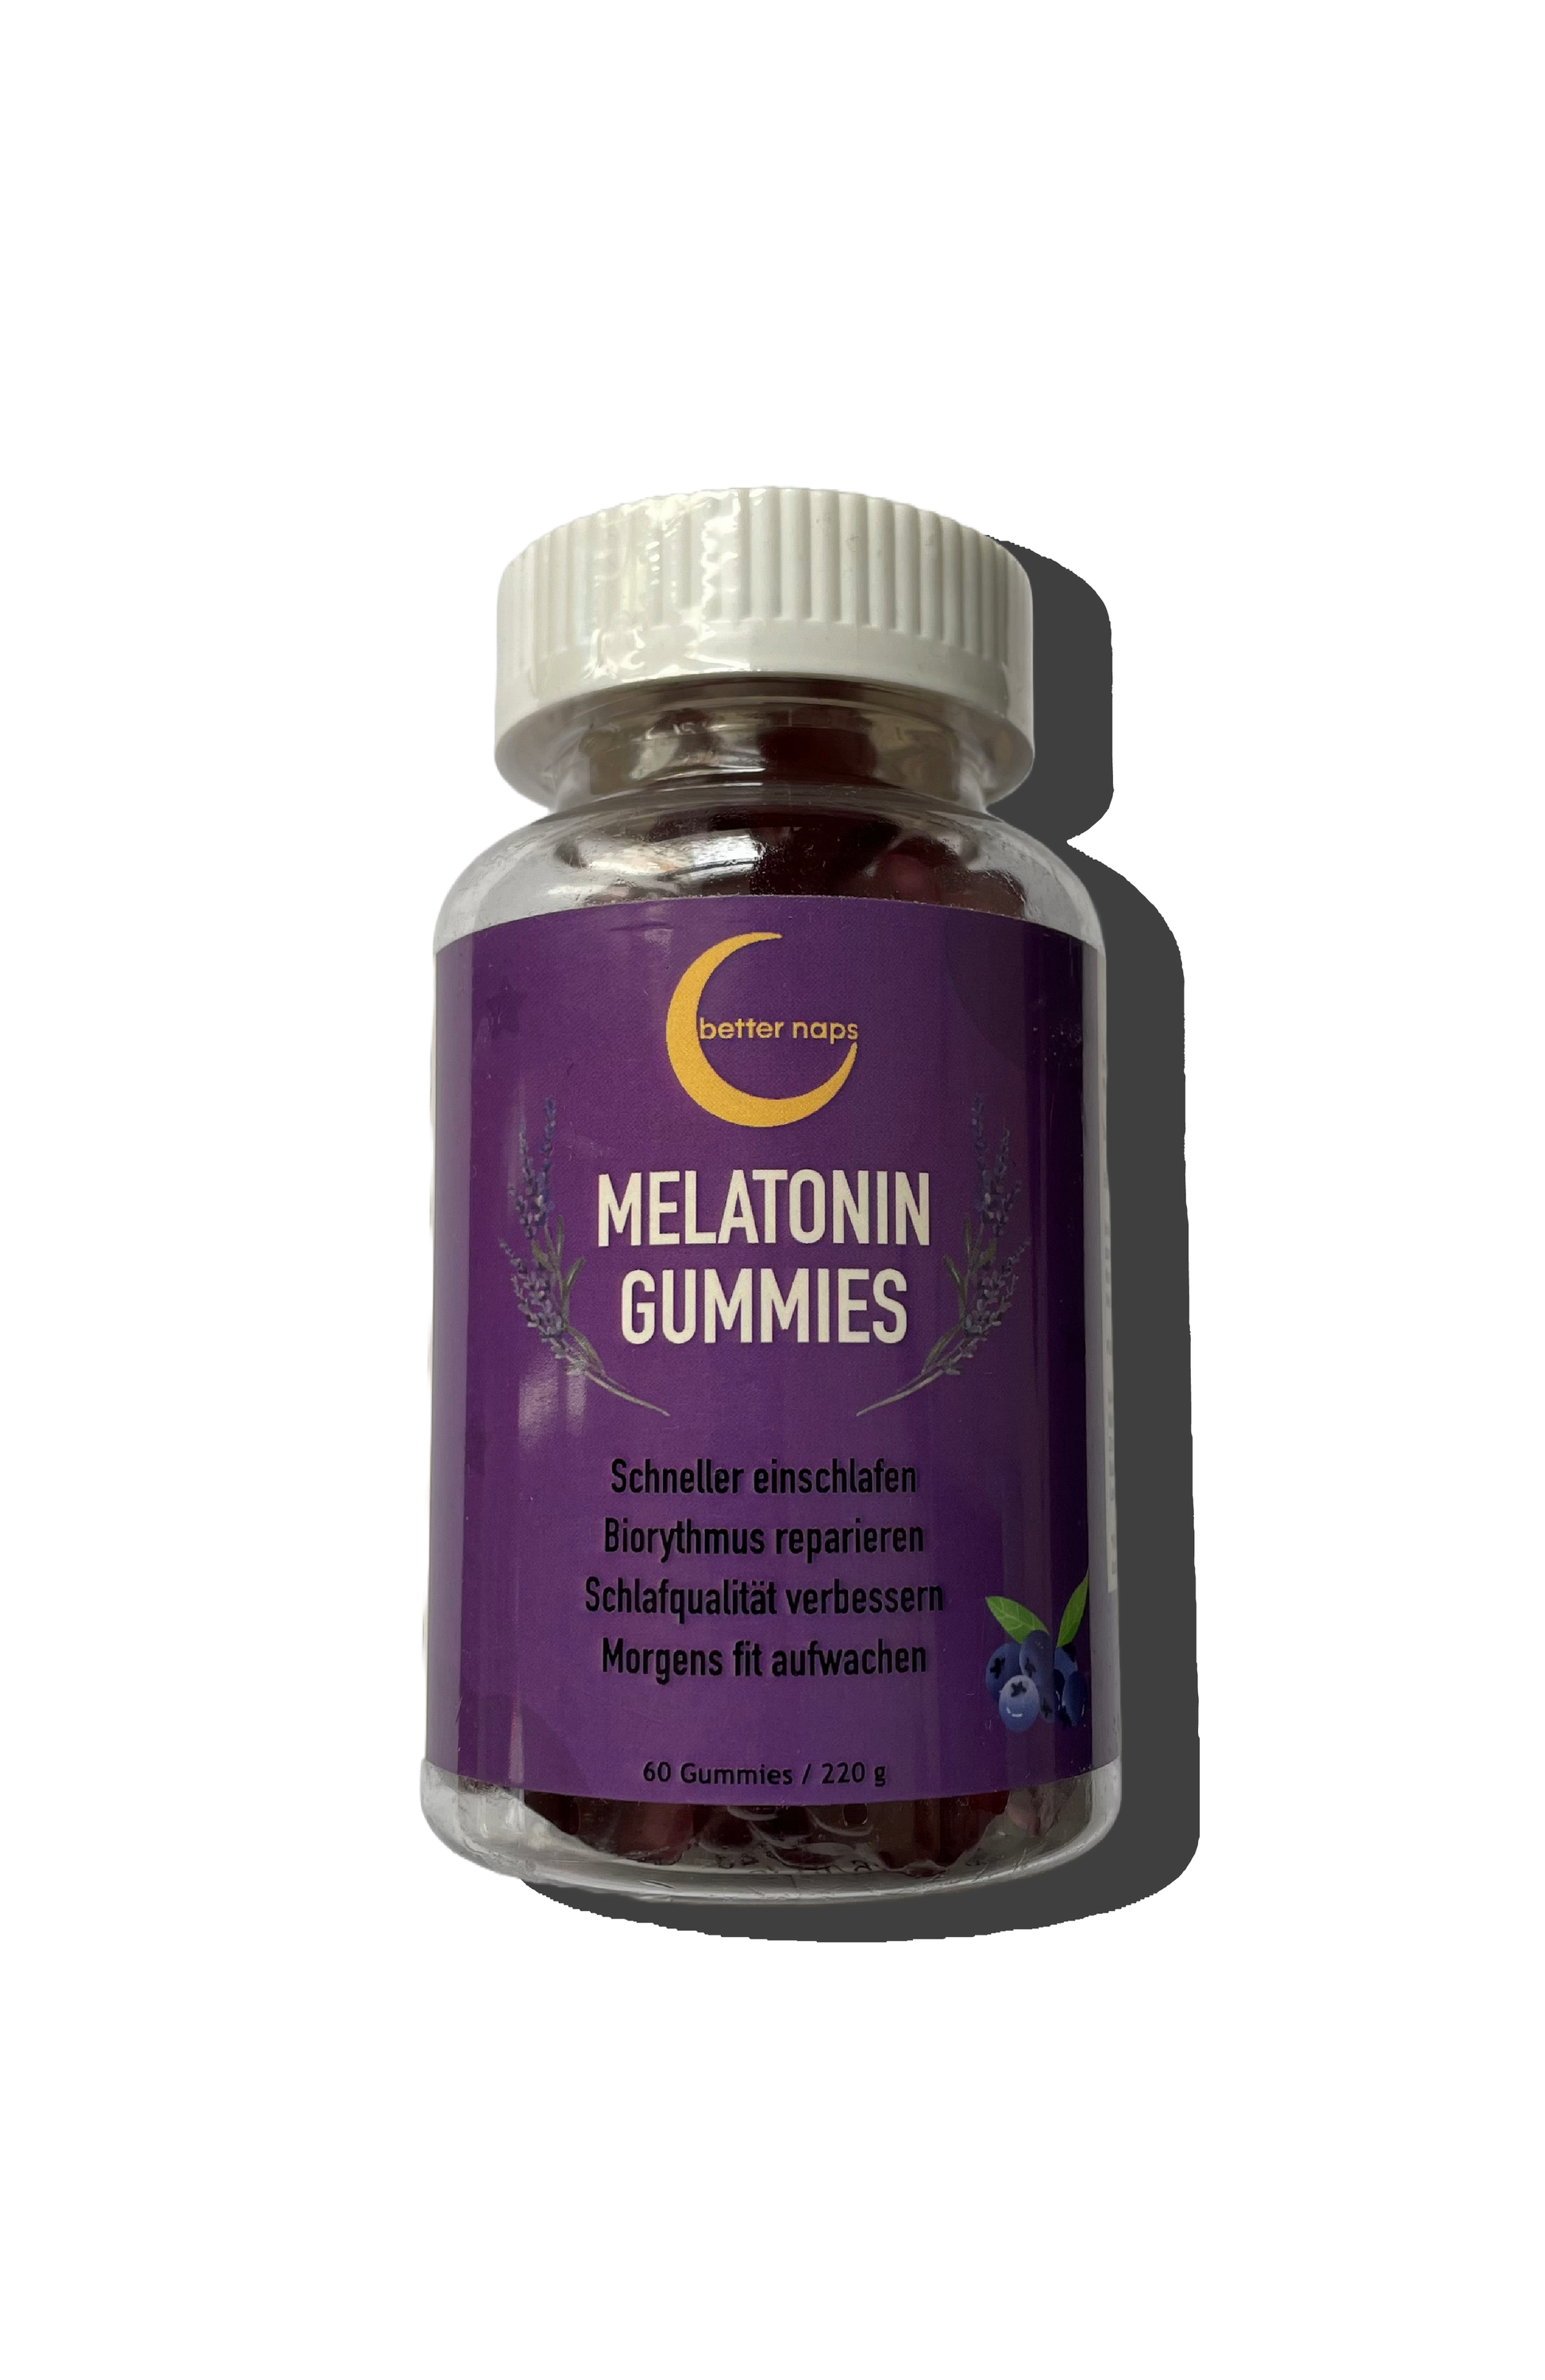 Melatonin Gummies - better-naps